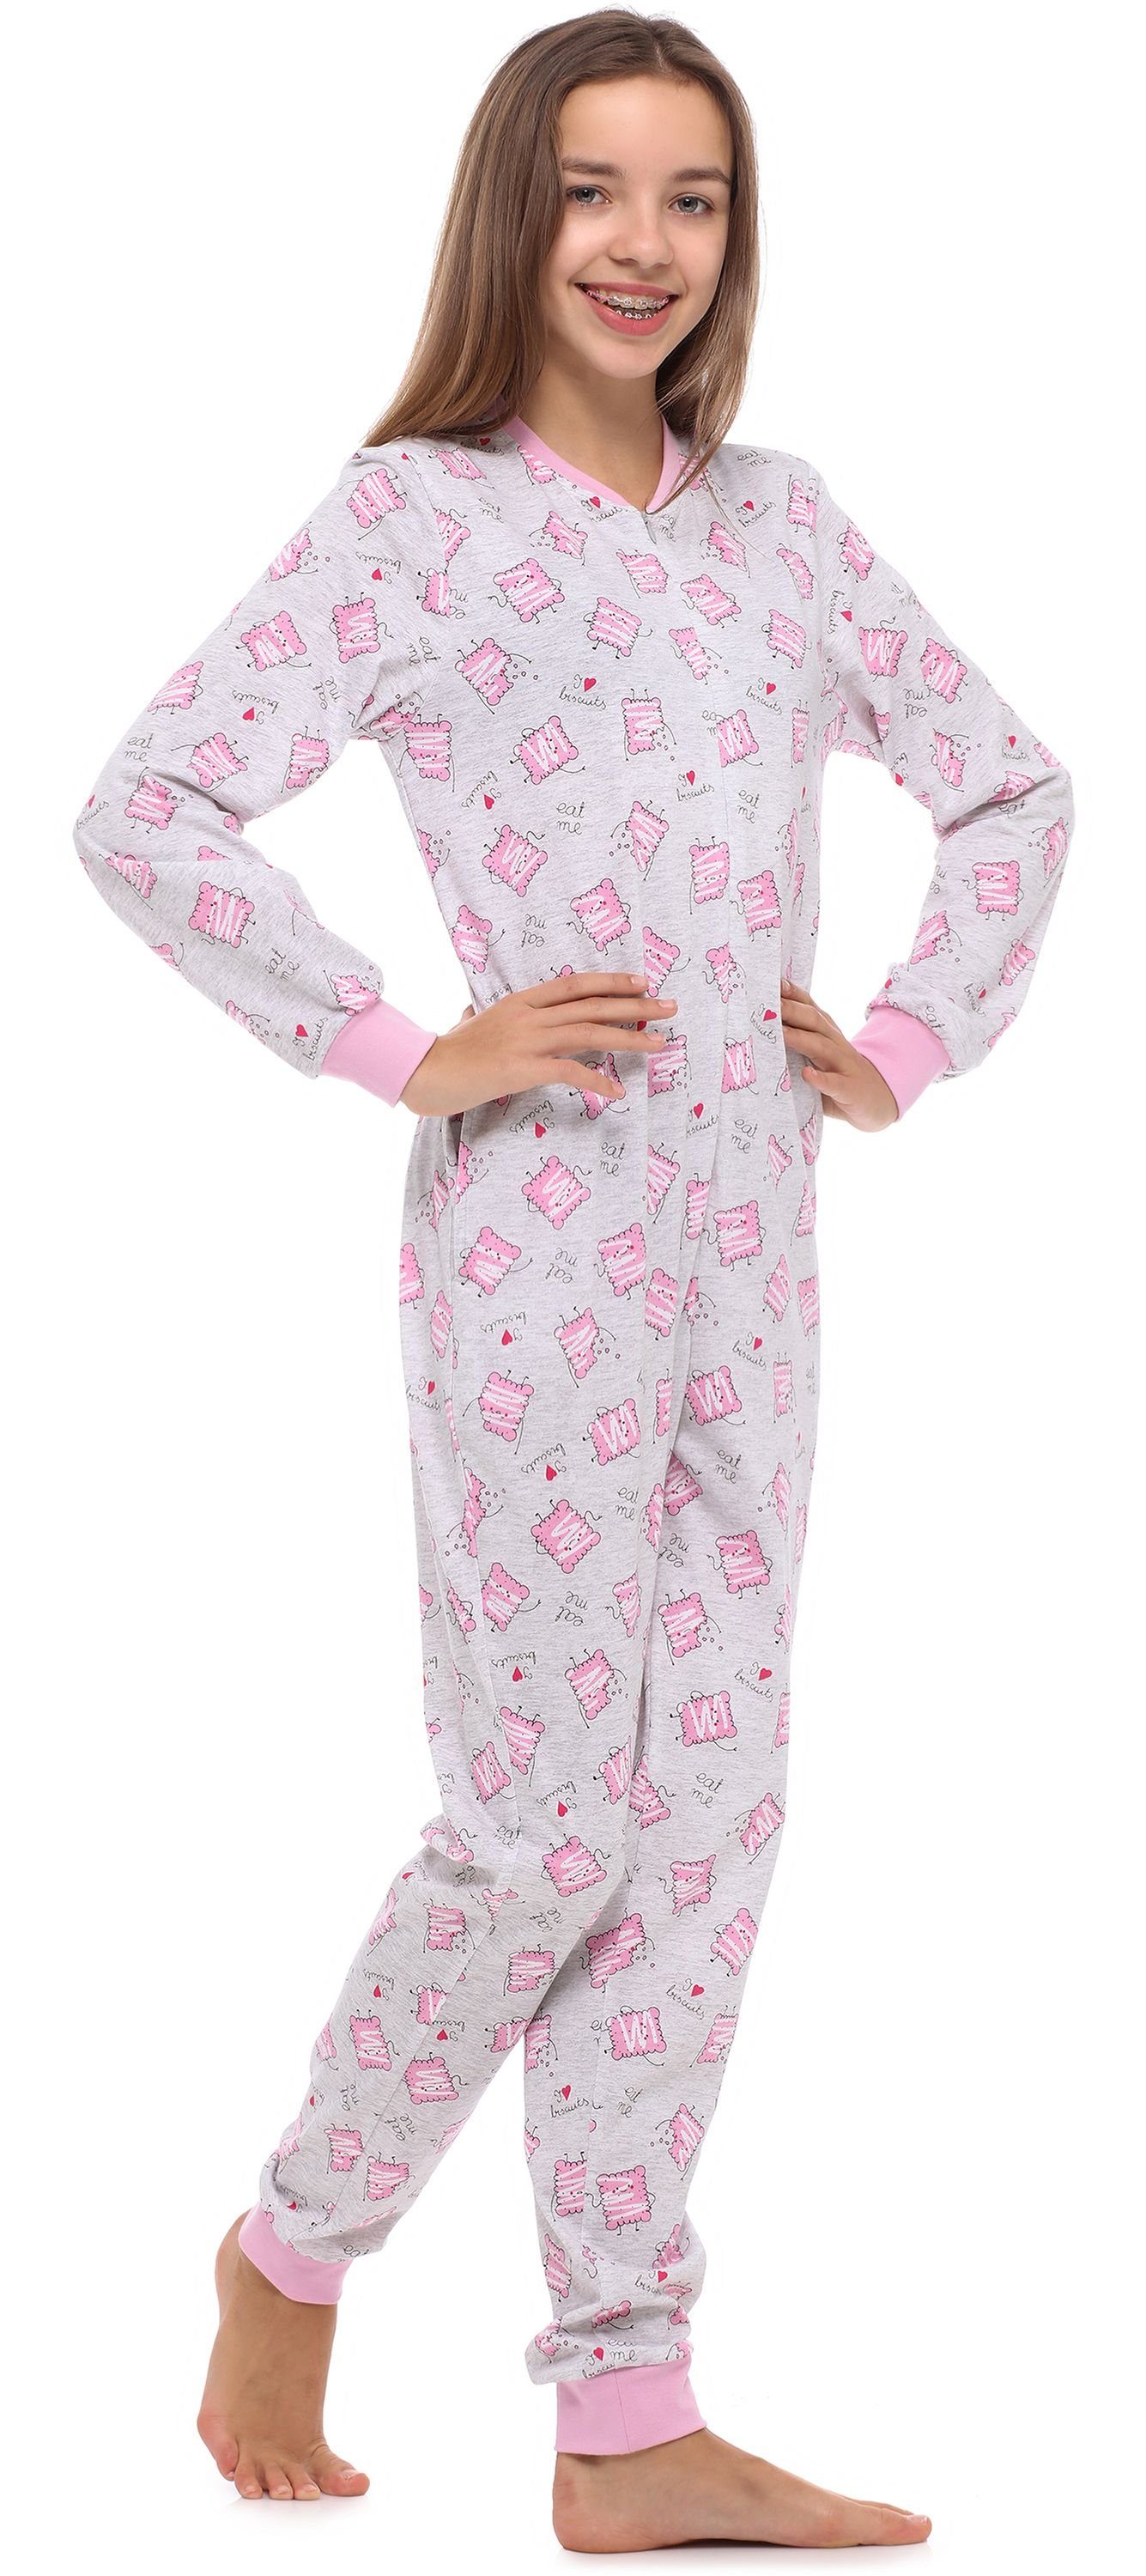 Schlafanzug Schlafoverall Merry Melange/Kekse Schlafanzug Jugend Mädchen MS10-235 Style